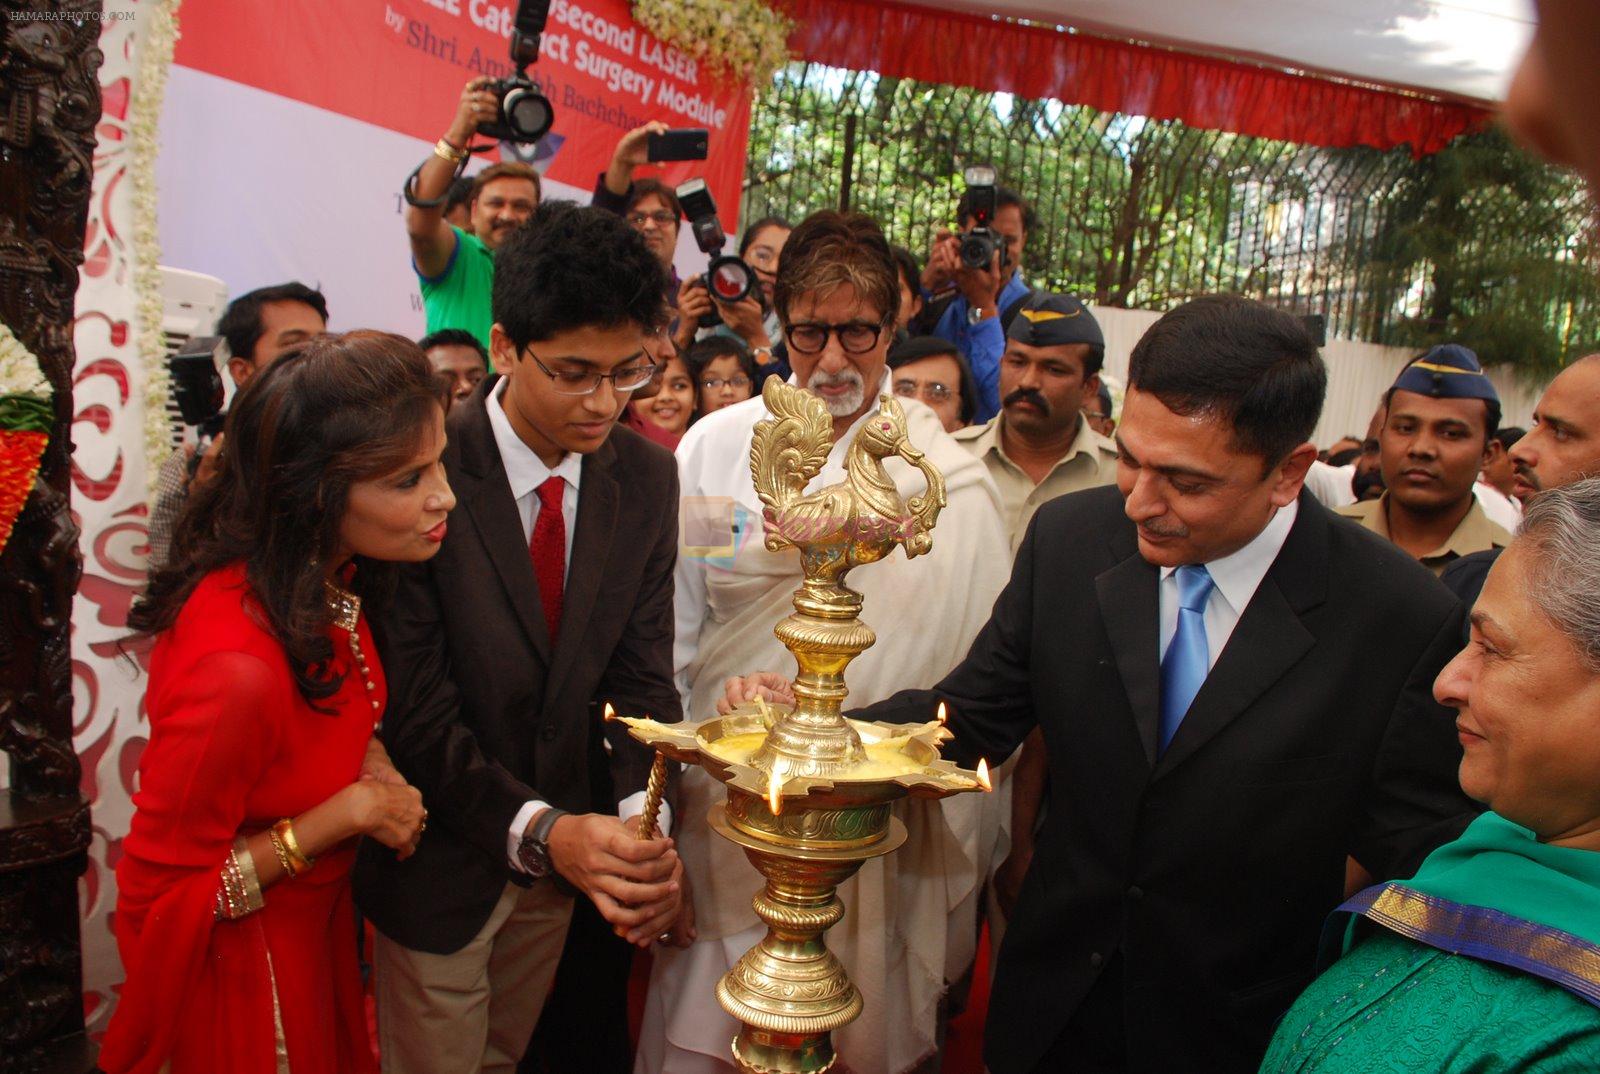 Amitabh Bachchan, Jaya Bachchan launch cataract new eye centre in Juhu, Mumbai on 21st Jan 2015